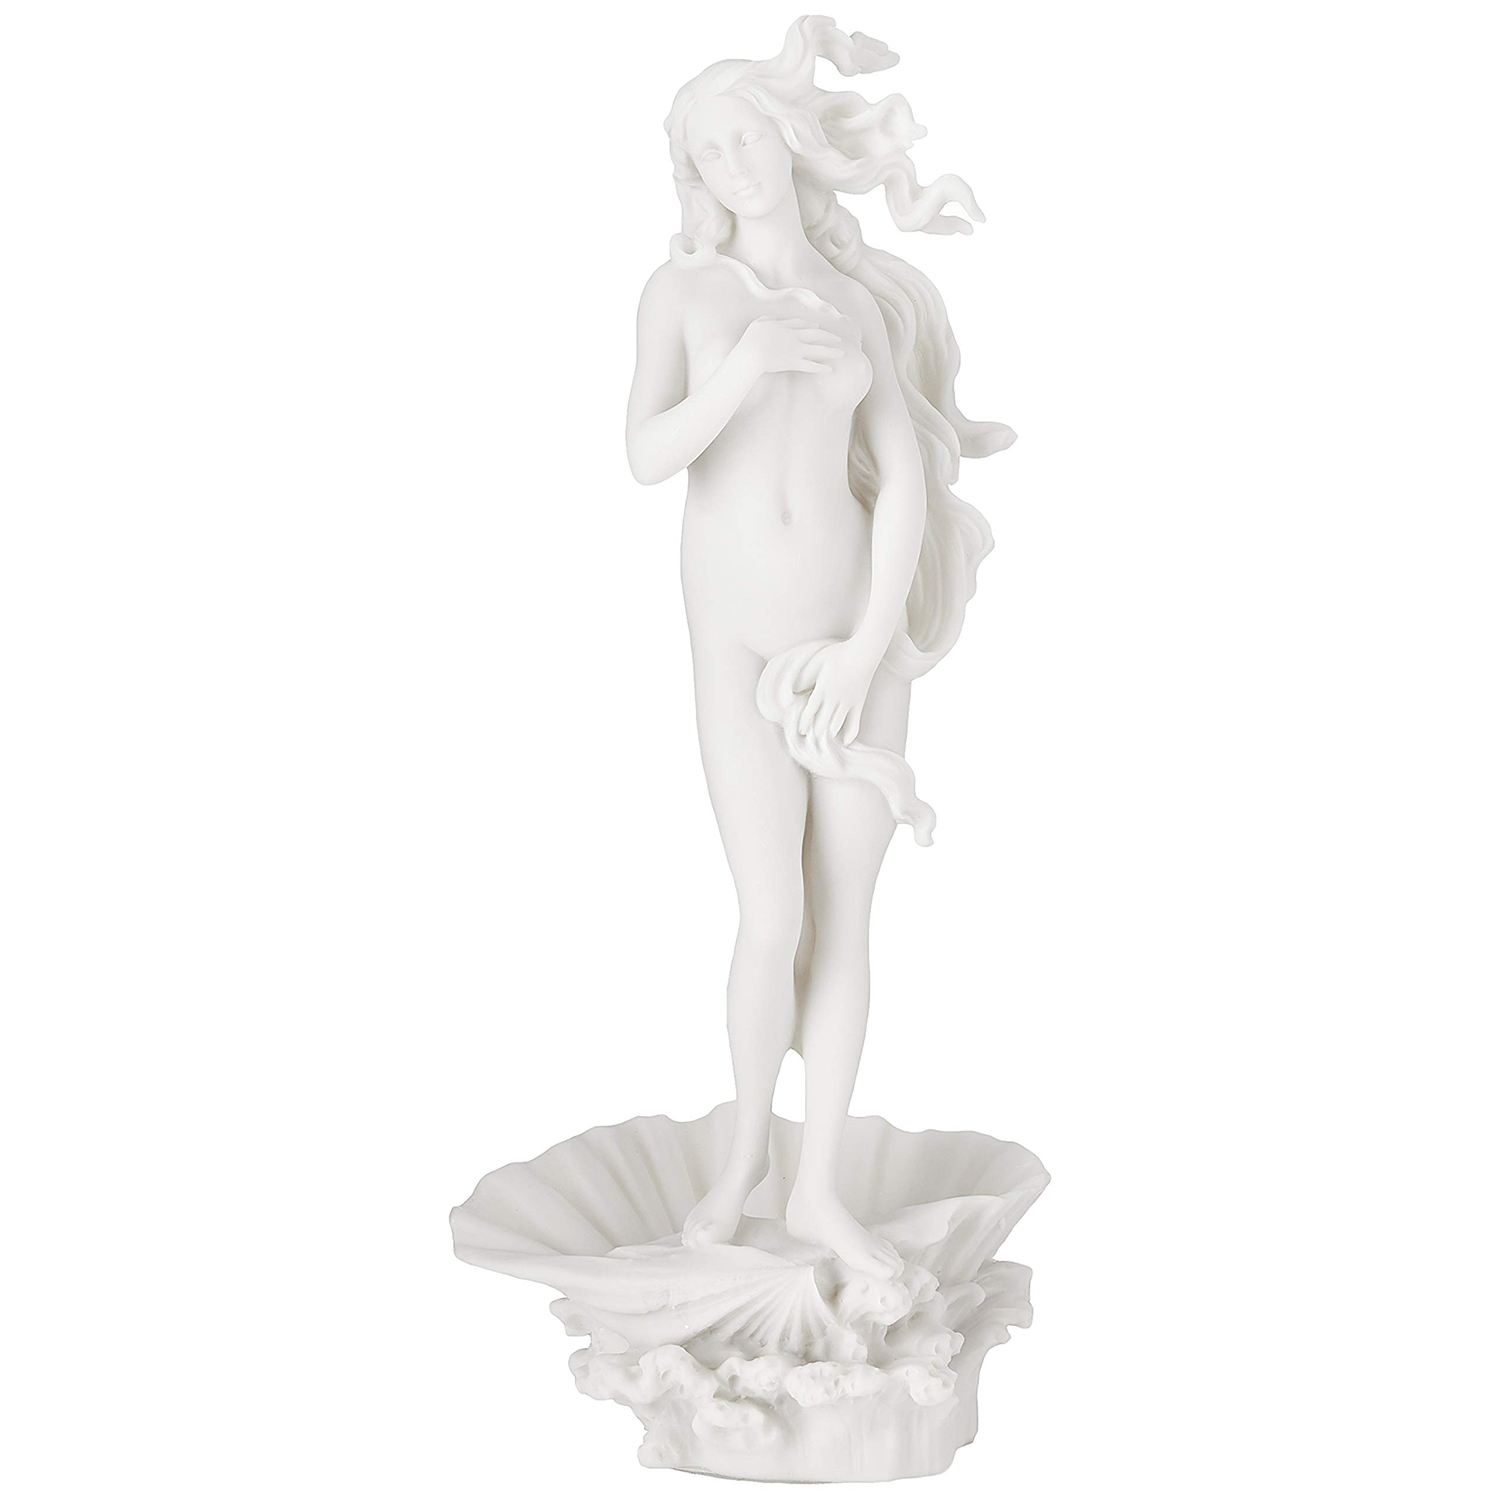 Birth of Aphrodite Statue